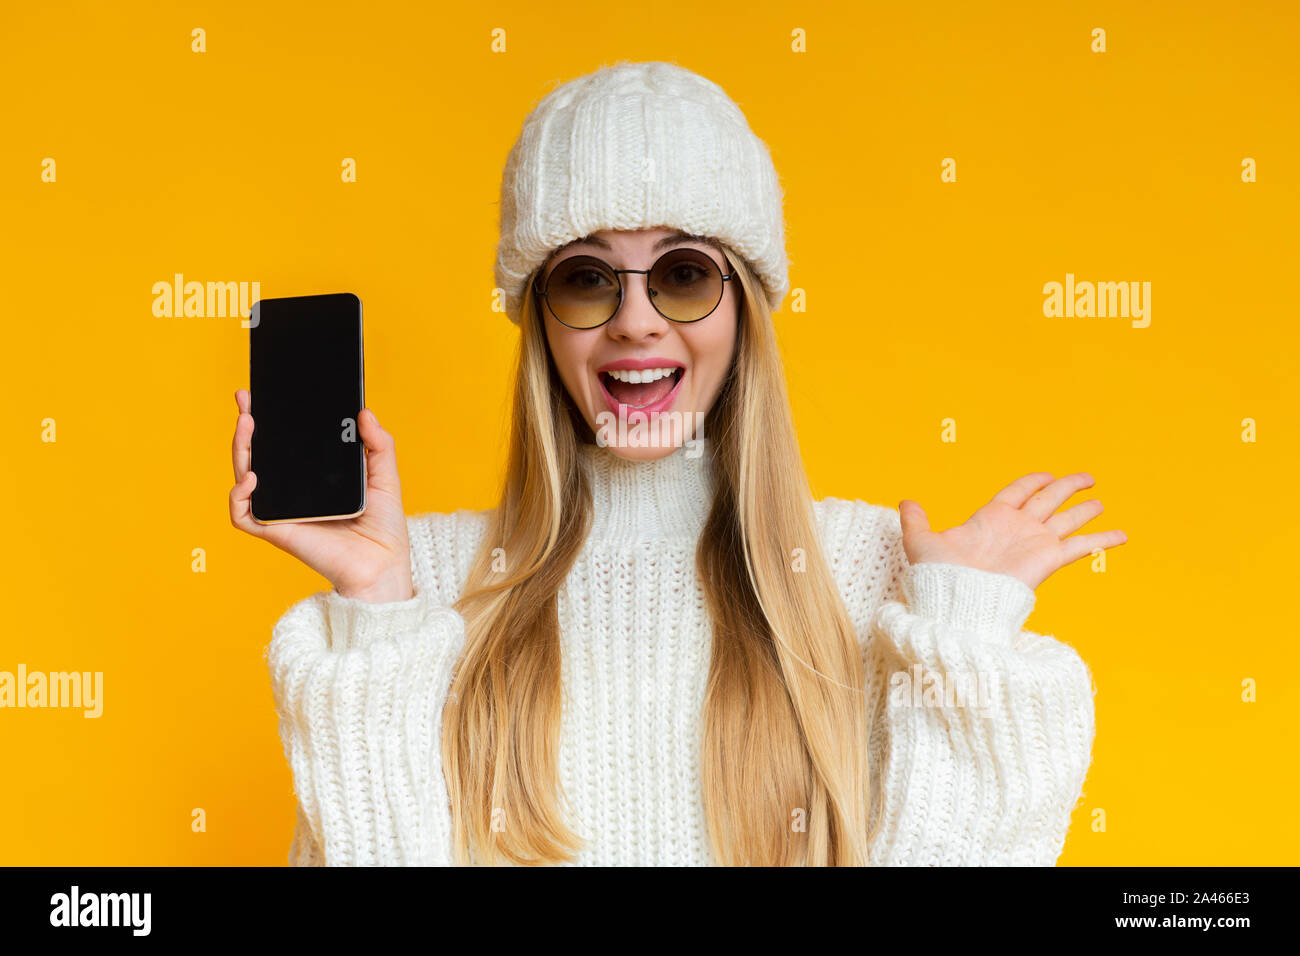 Emotionale Frau im Winter hat zeigt leeren Bildschirm des Smartphones Stockfoto